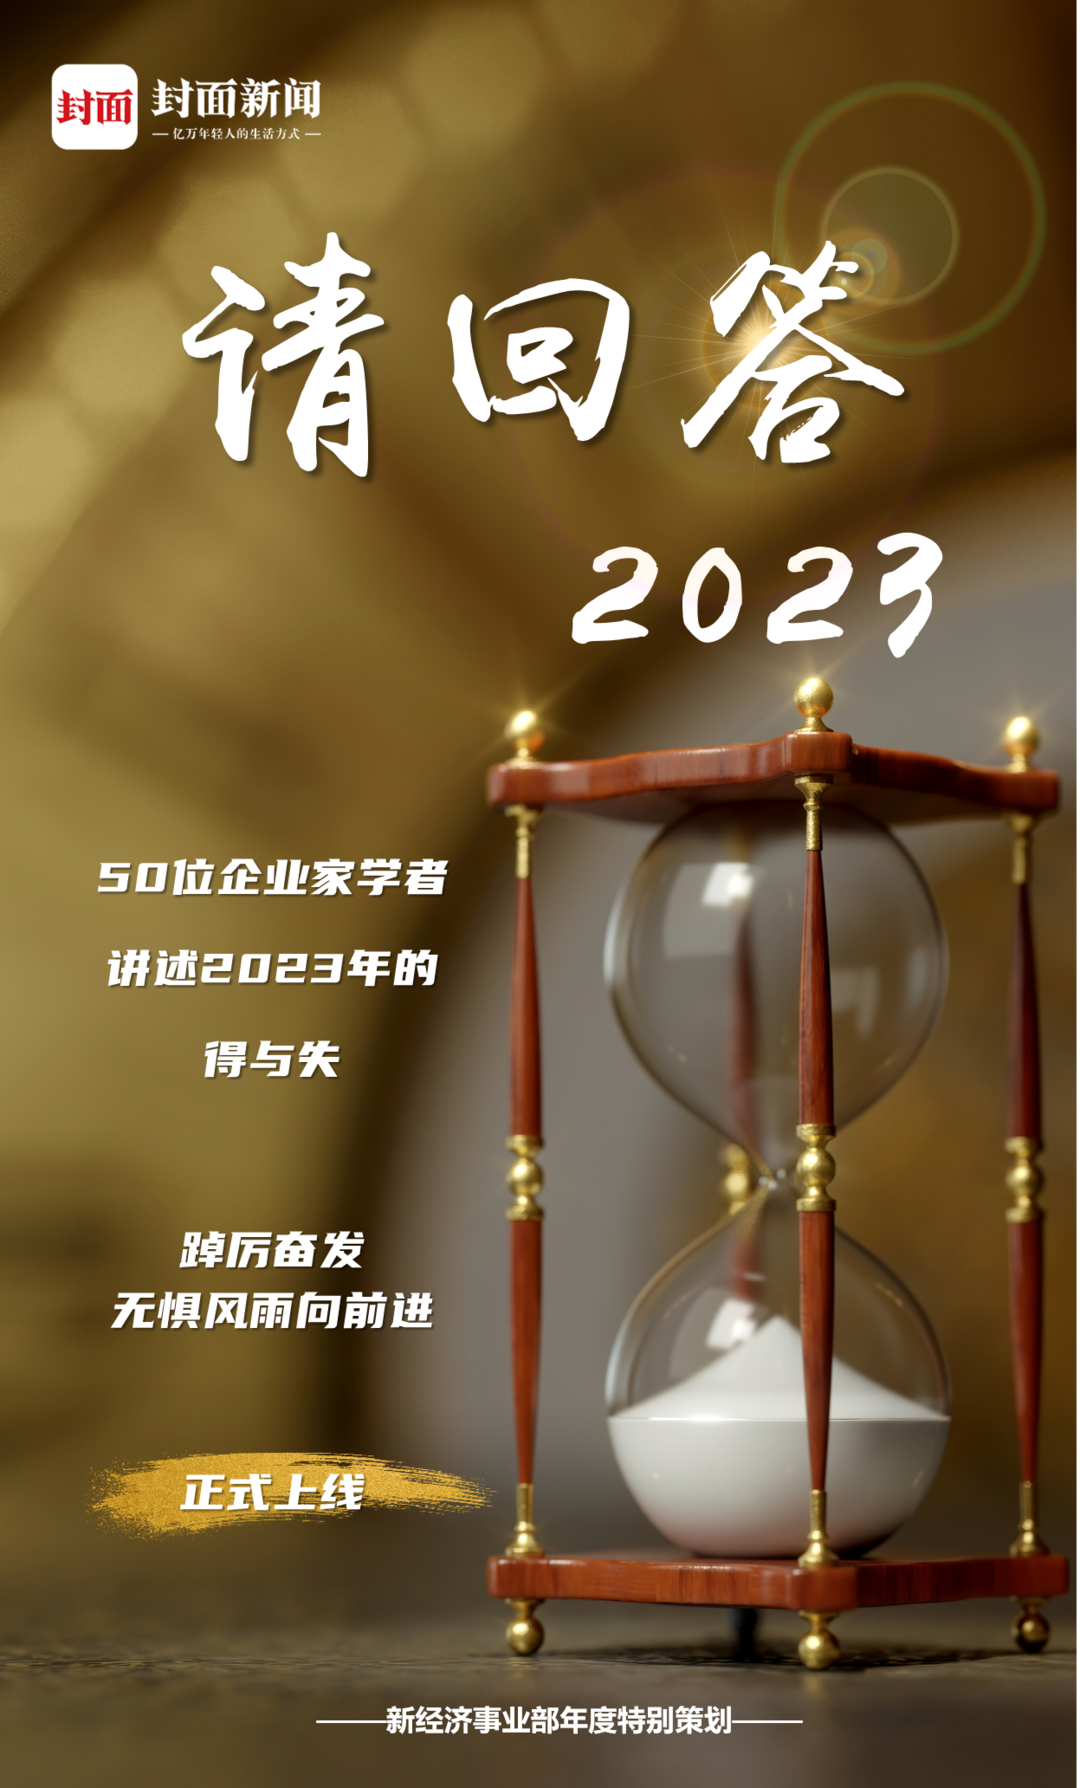 “封面”请回答2023丨百果园董事长余惠勇：专注于顾客需求始终是企业发展的关键